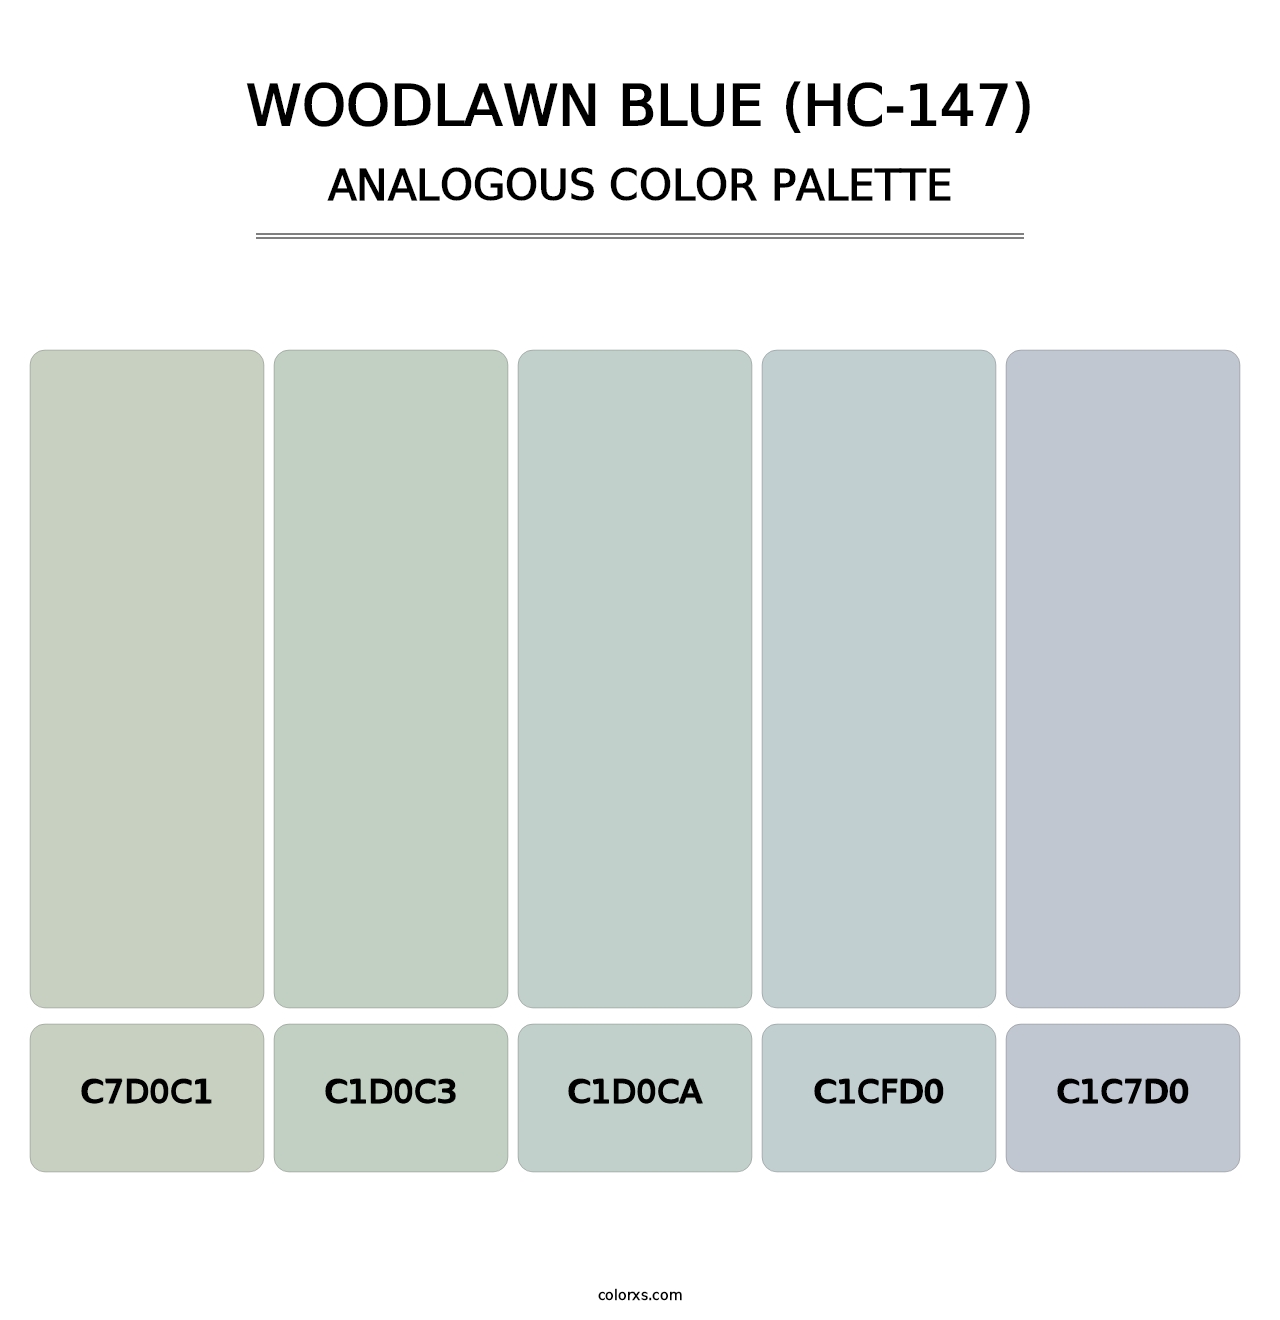 Woodlawn Blue (HC-147) - Analogous Color Palette